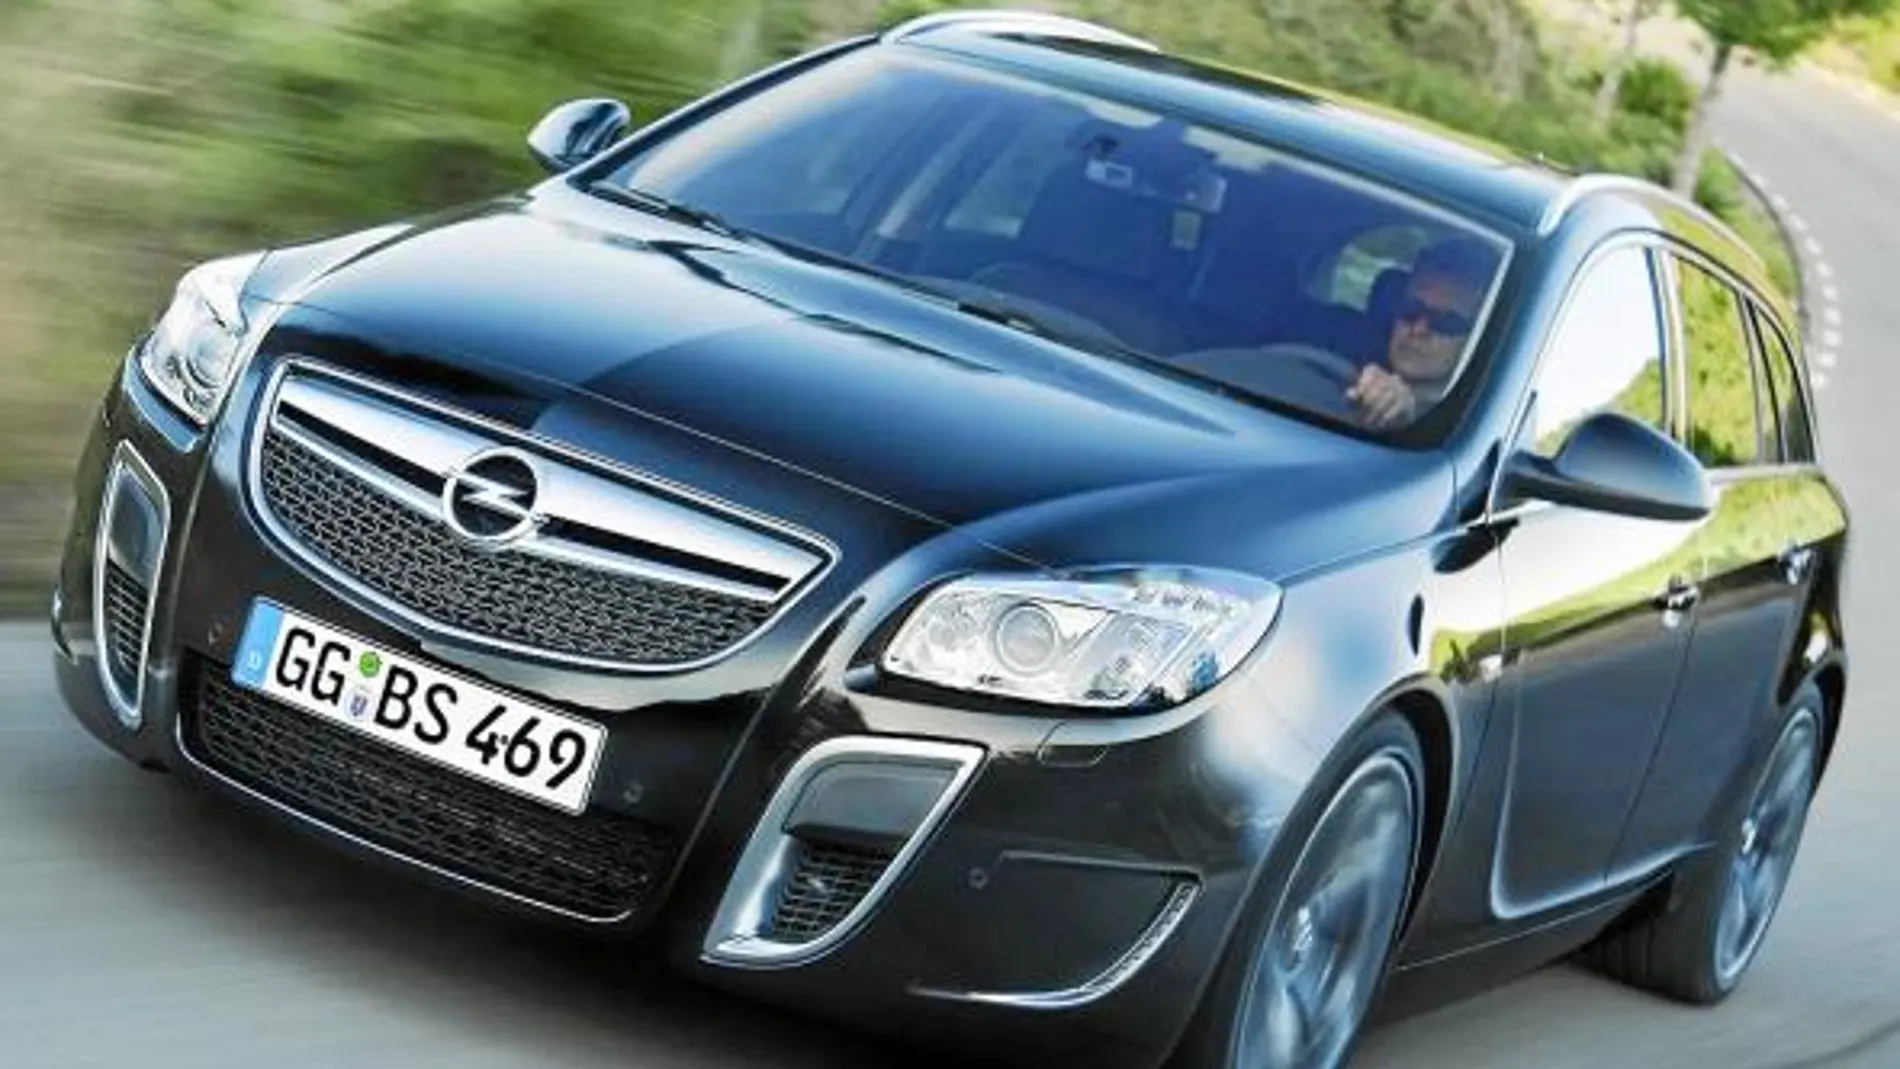 La parte frontal es similar a las versiones berlina. Opel ha realizado un gran trabajo de diseño en su modelo de más alta representación